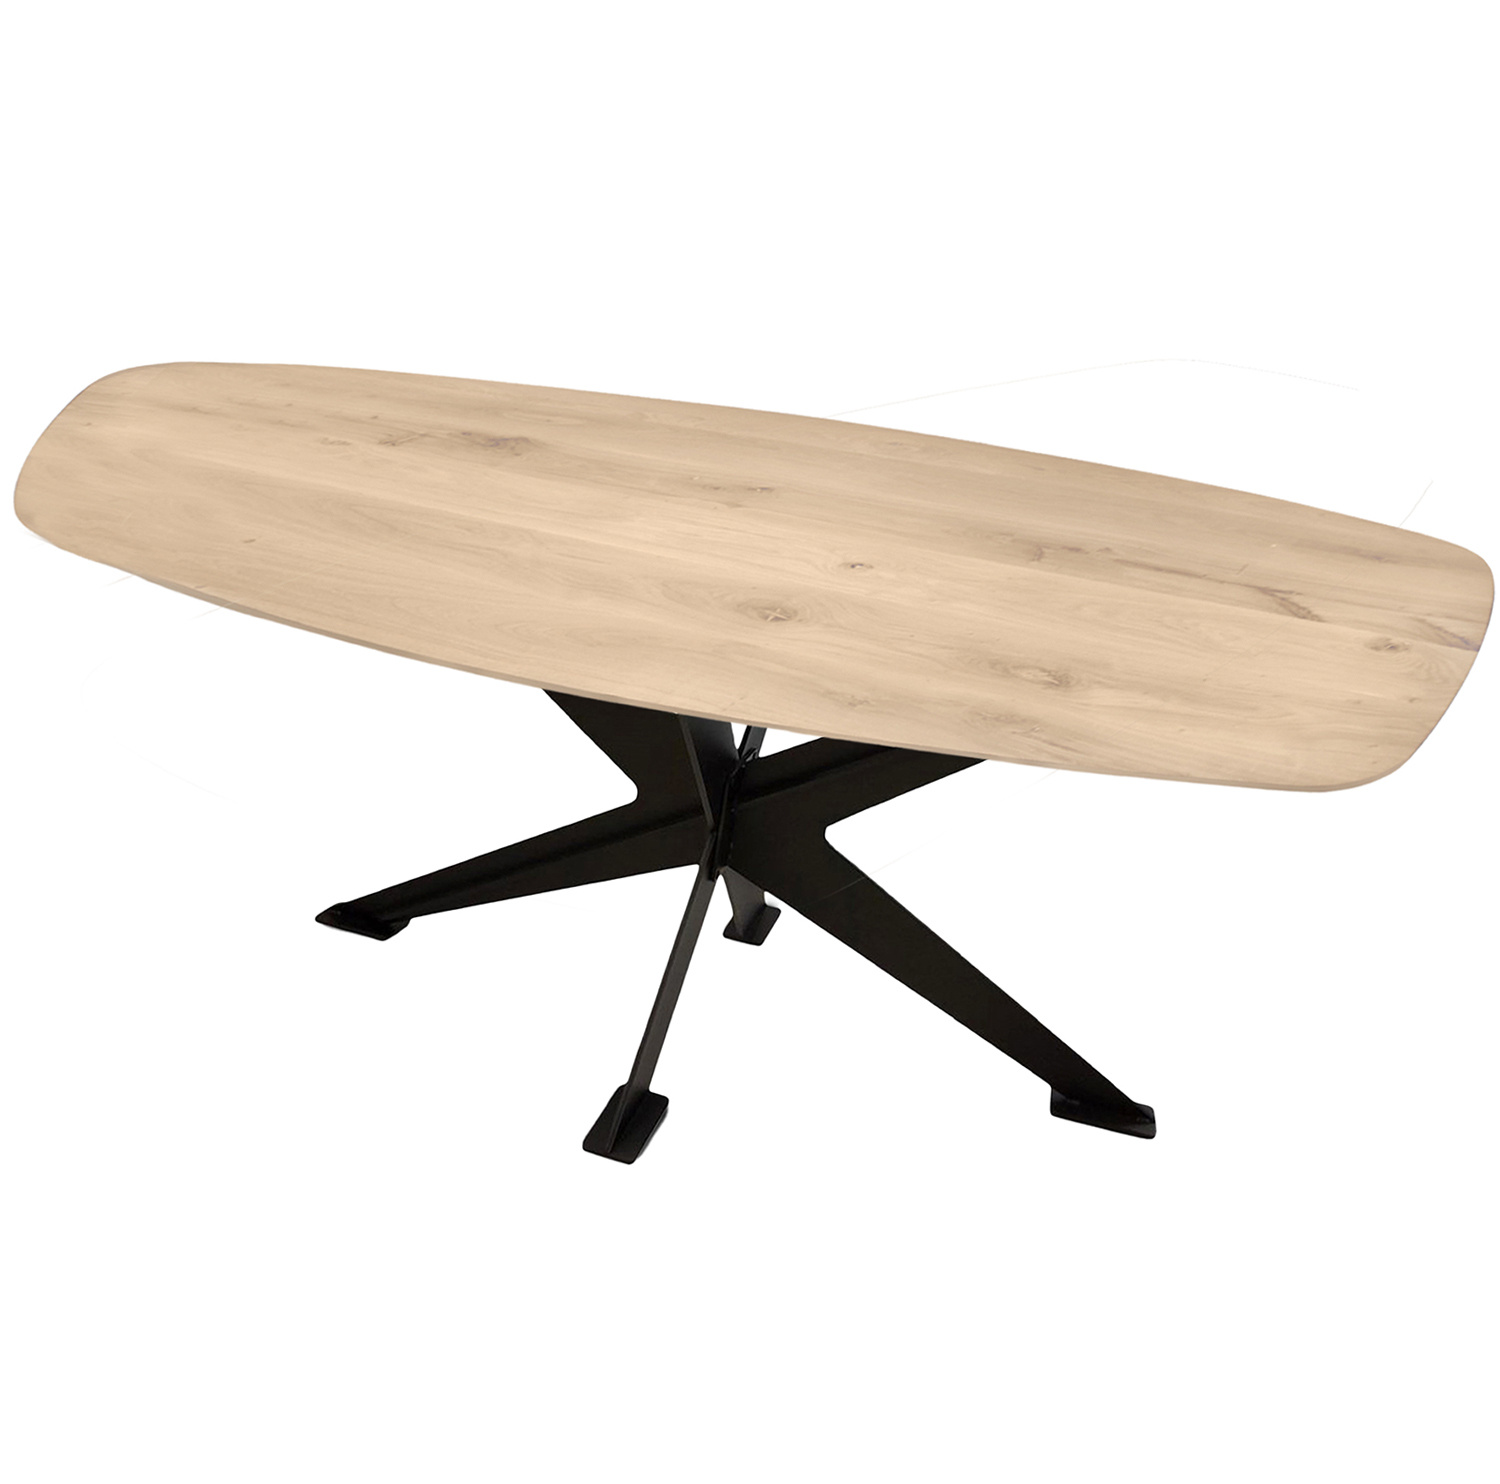  Tischplatte Eiche dänisch-oval - 2,5 cm dick - Eichenholz Rustikal - Bootsform Eiche Tischplatte massiv - HF 8-12%